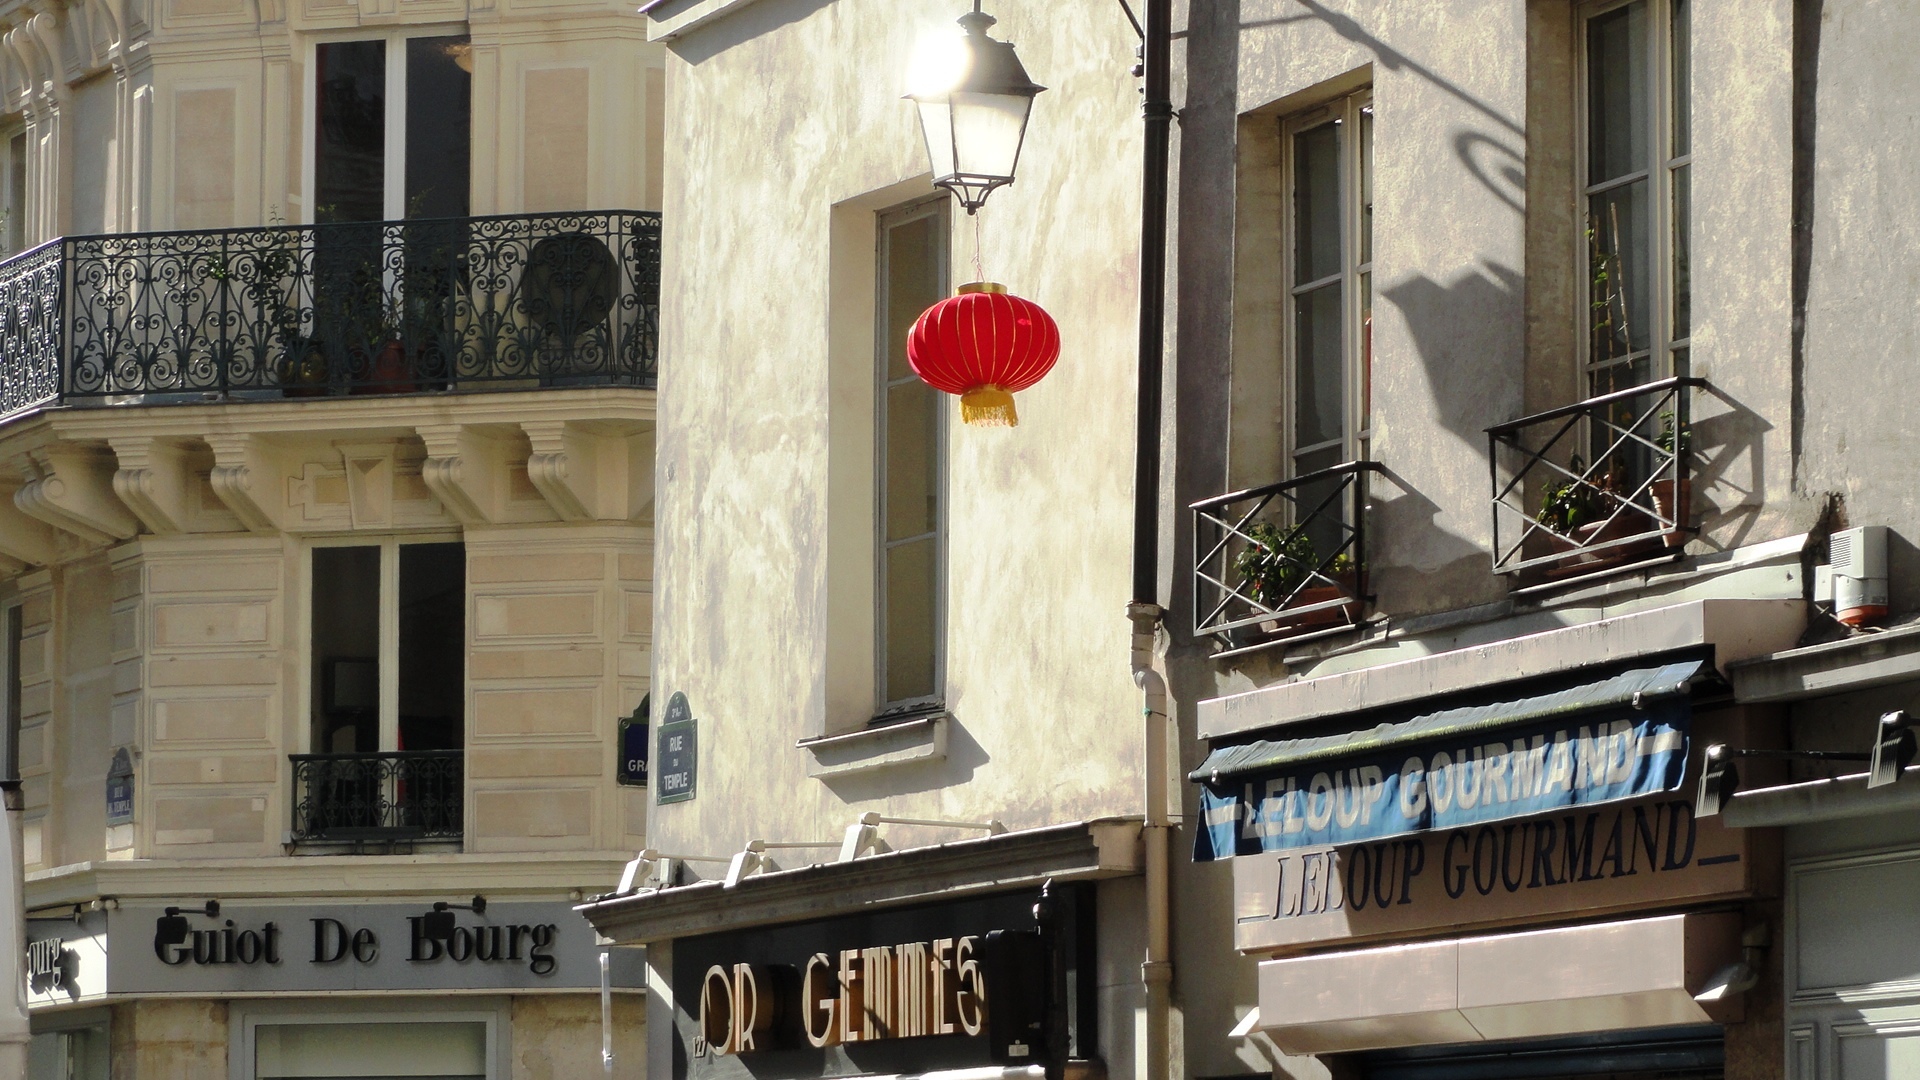 Nouvel an chinois dans le Marais - Rue du Temple